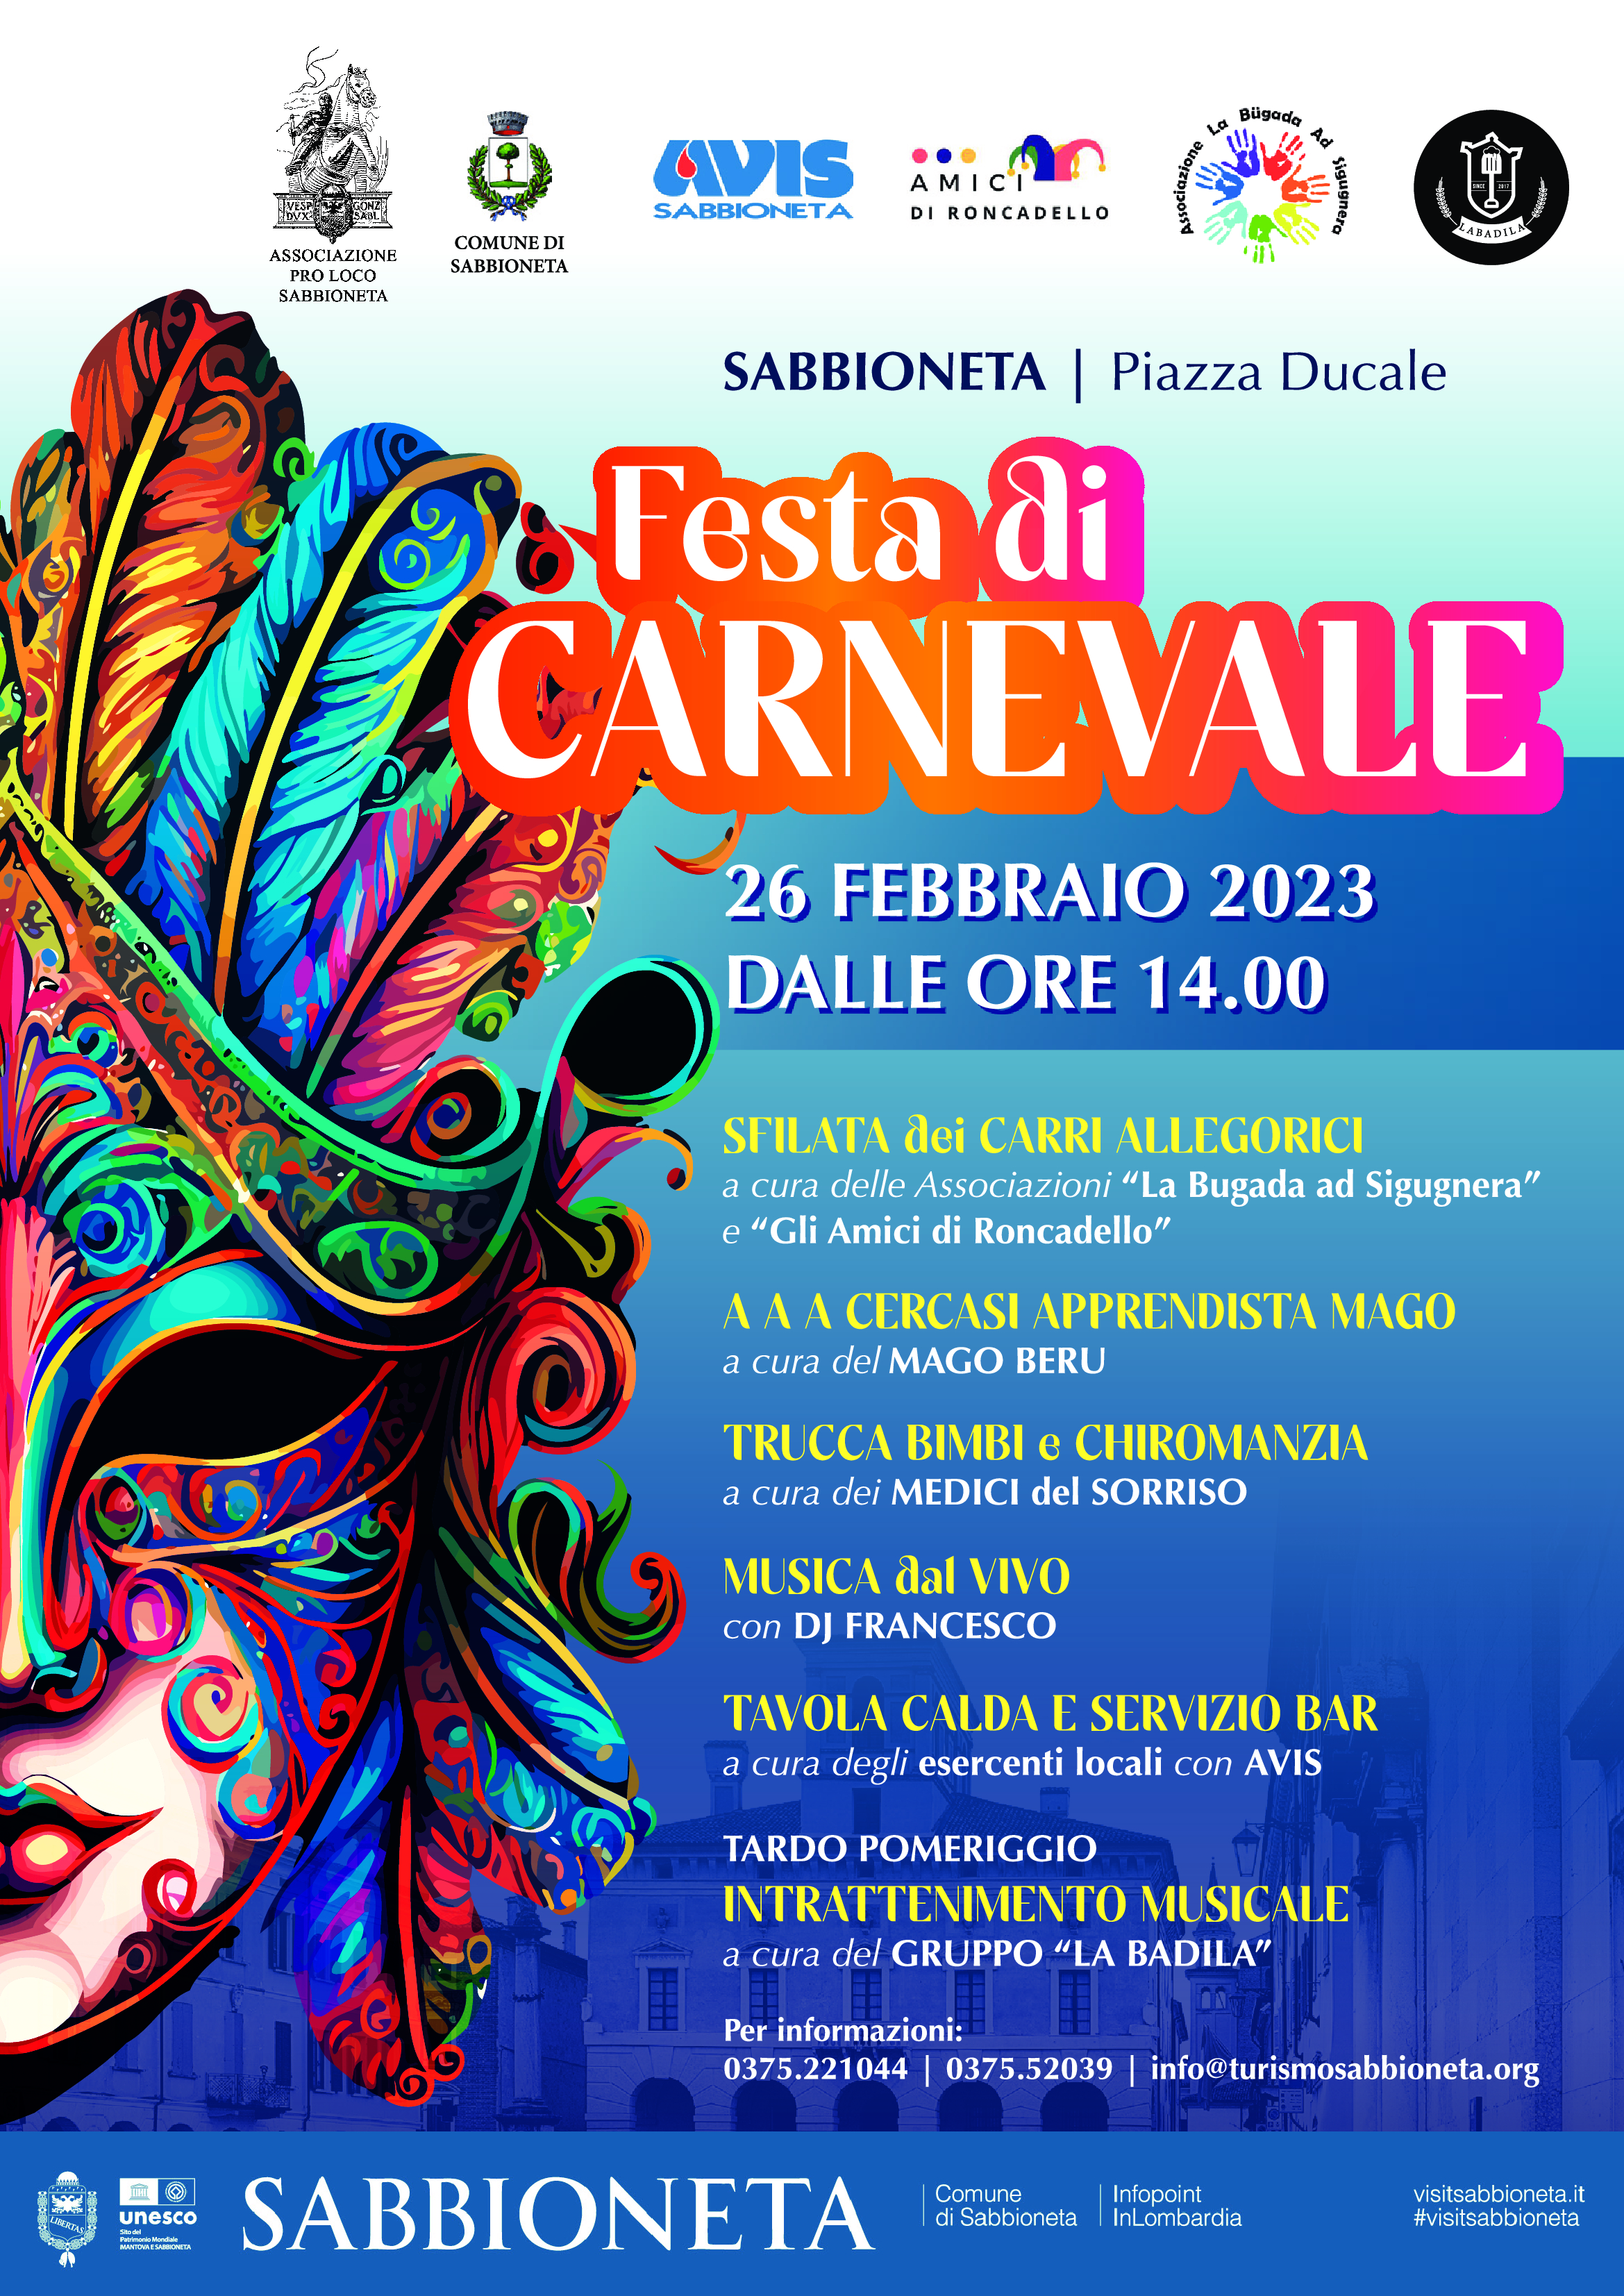 26 FEBBRAIO 2023 - FESTA DI CARNEVALE